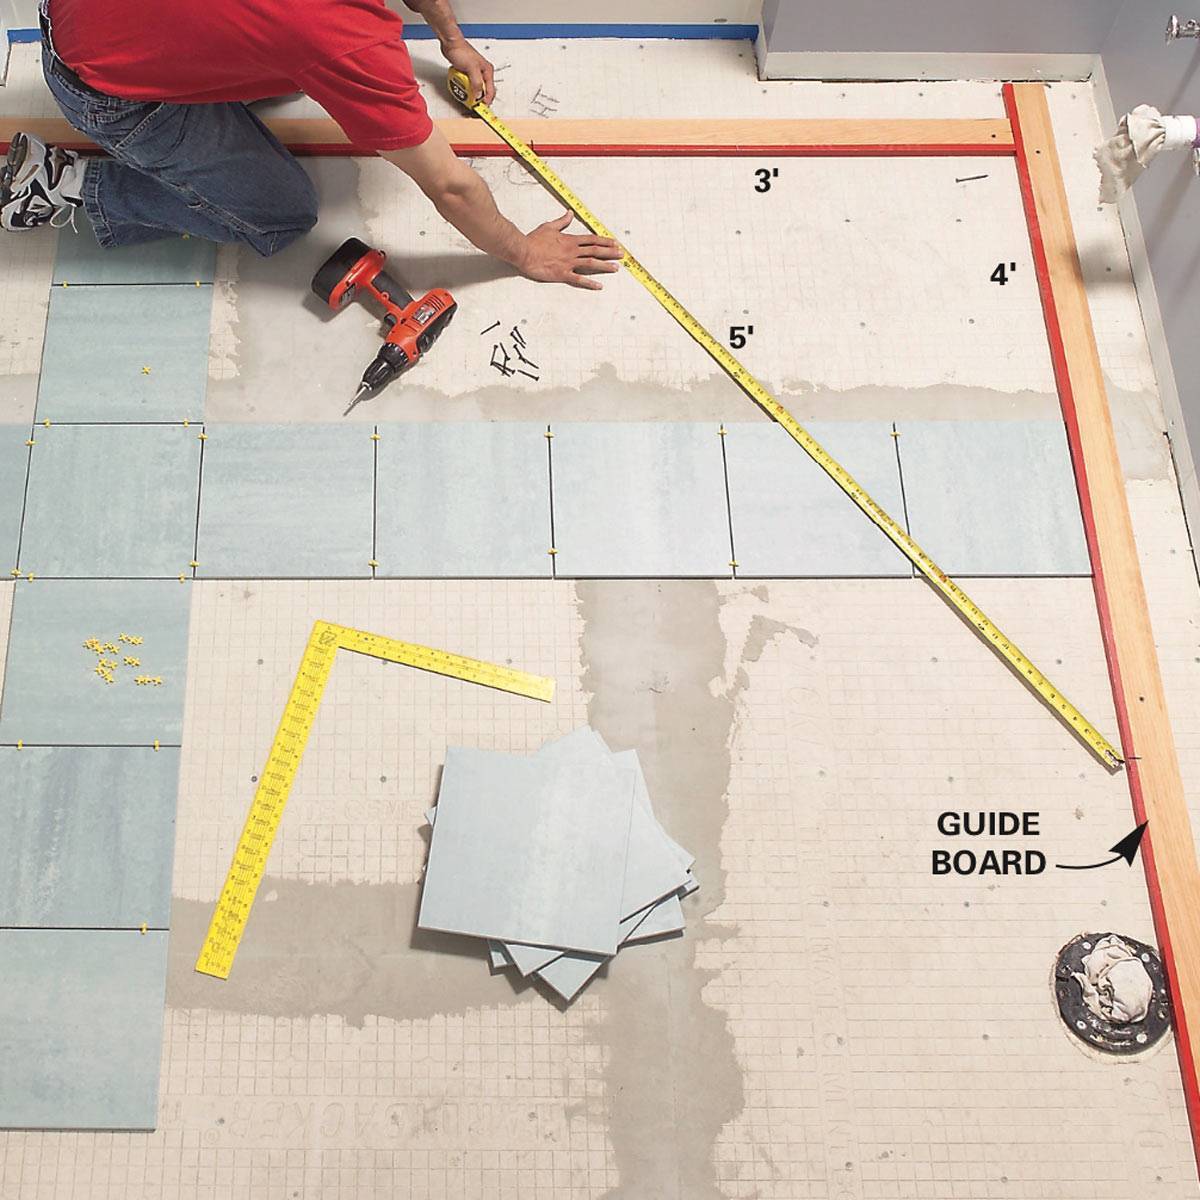 Как класть плитку на кухне на пол: пошаговый мастер-класс (фото) - все о строительстве